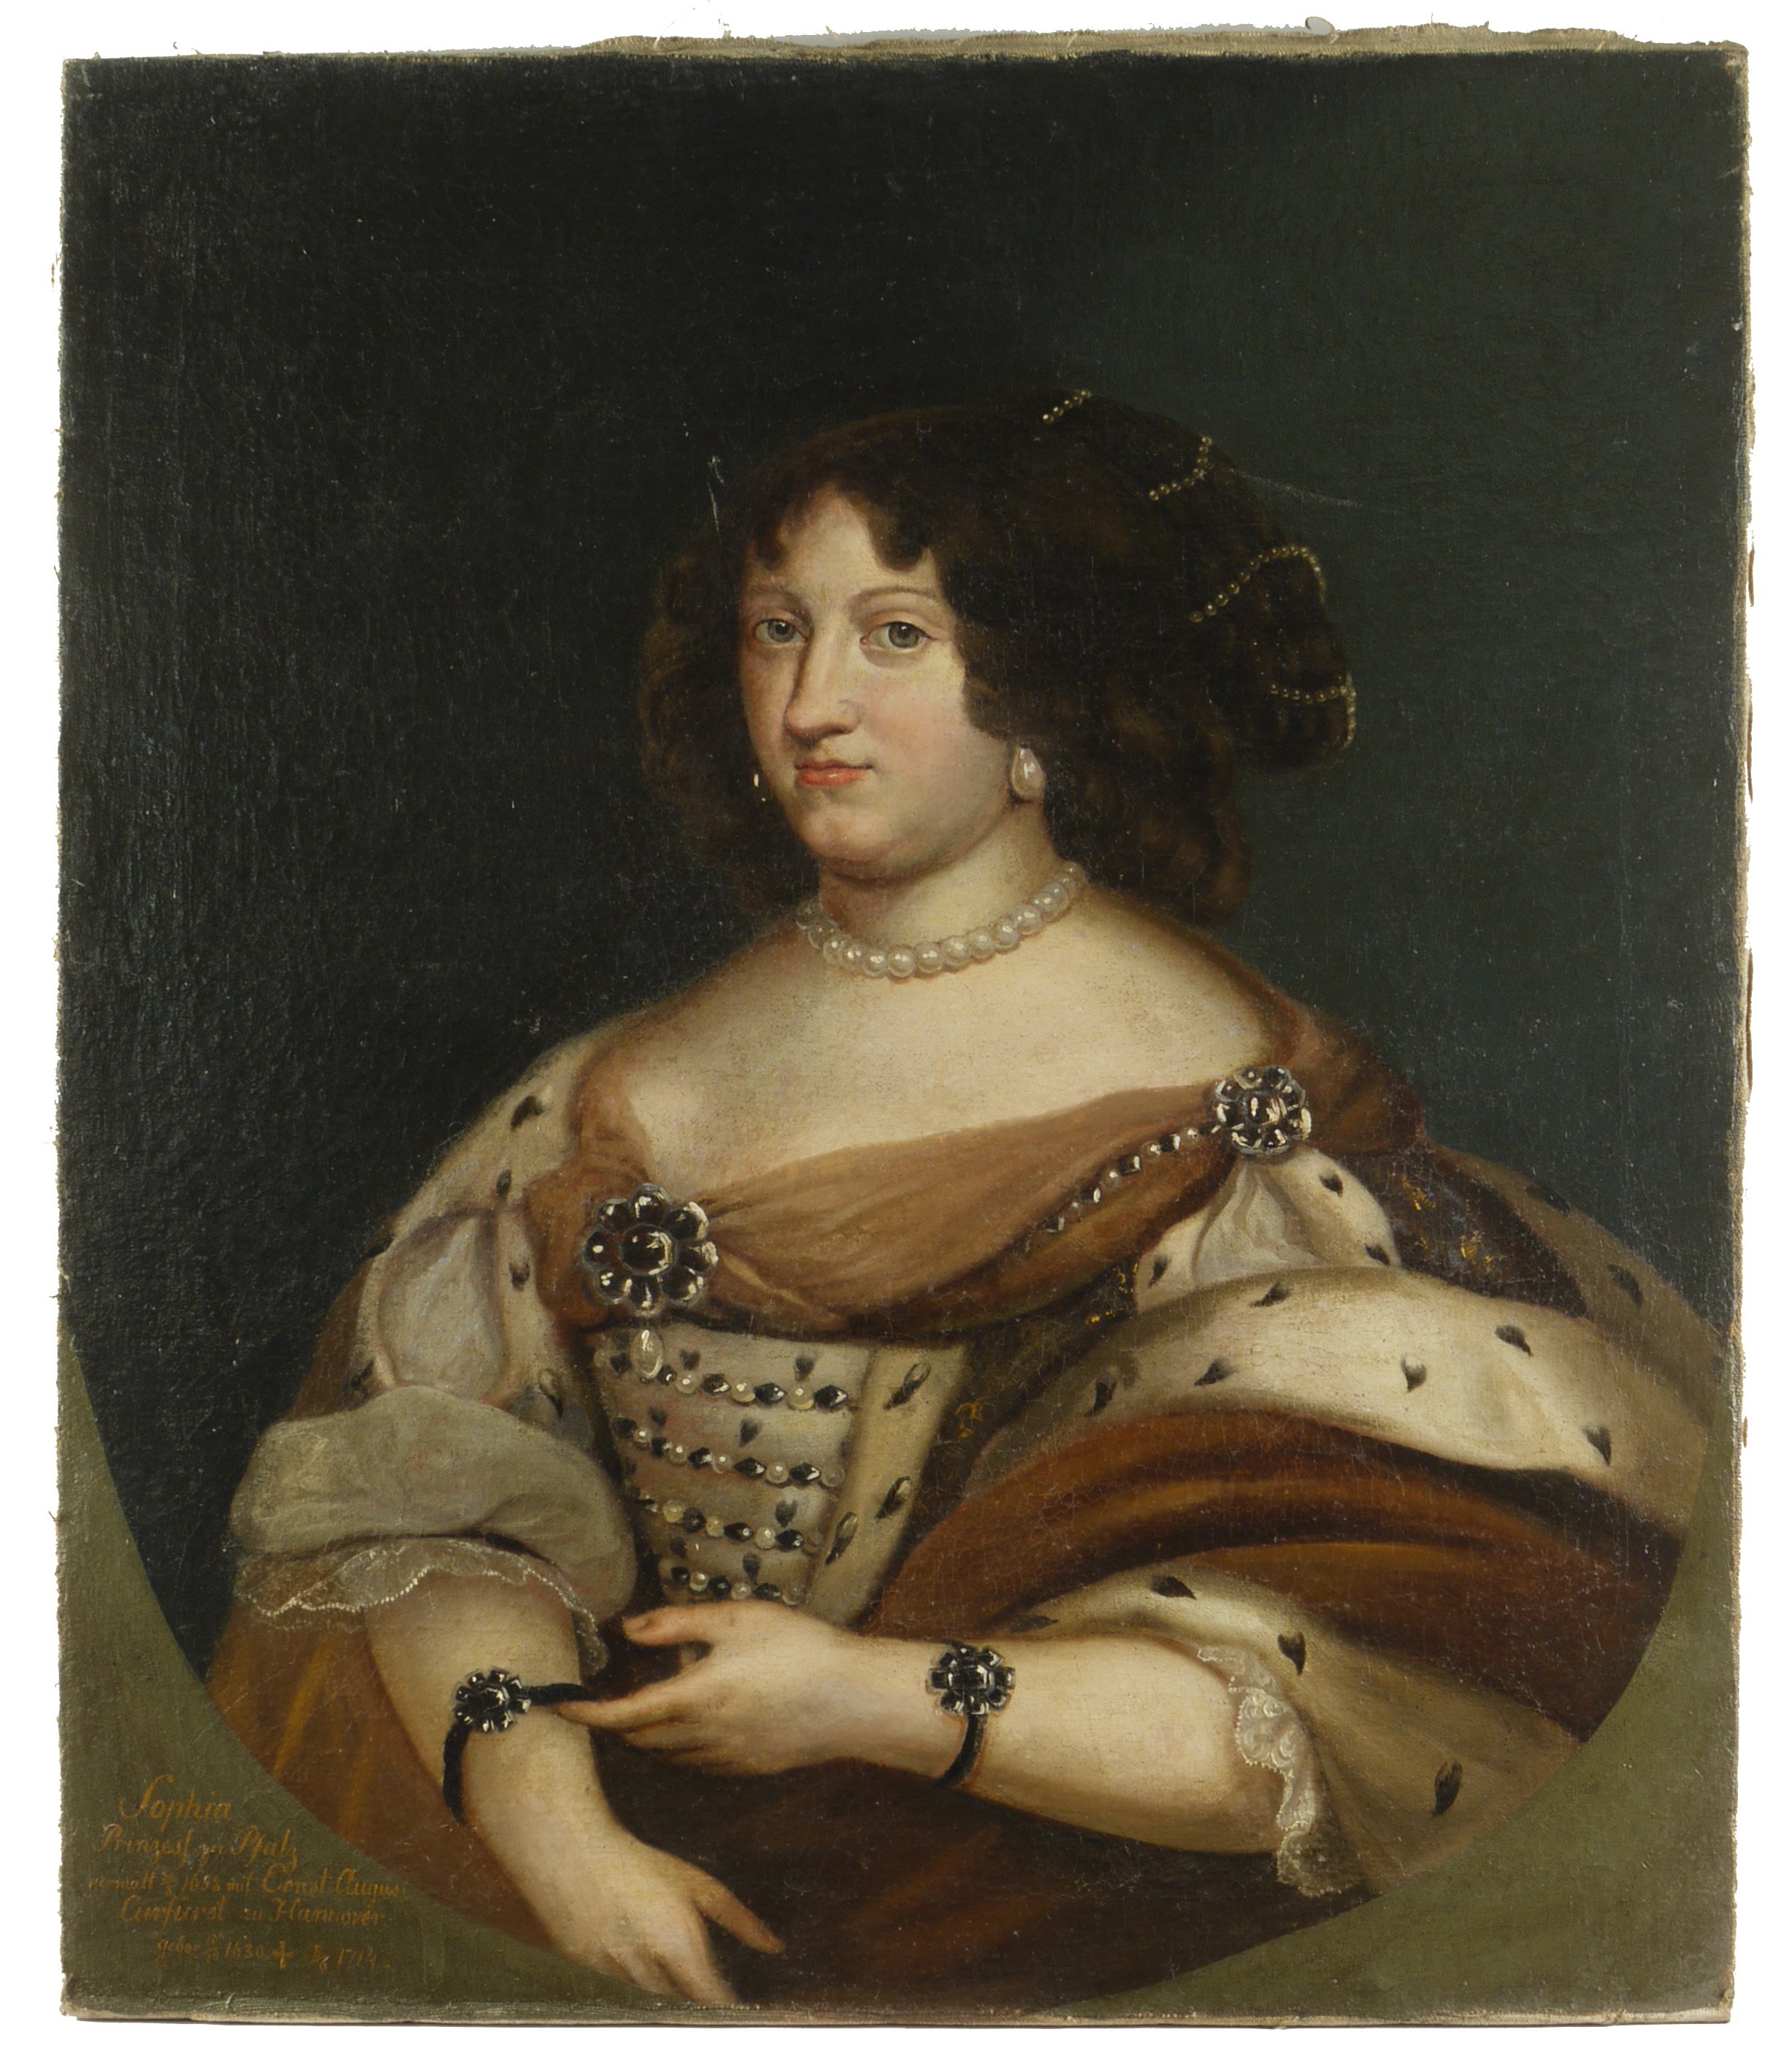 Sophie Prinzessin von der Pfalz (1630-1714), Gemahlin von Ernst August von Hannover (Historisches Museum der Pfalz, Speyer CC BY)